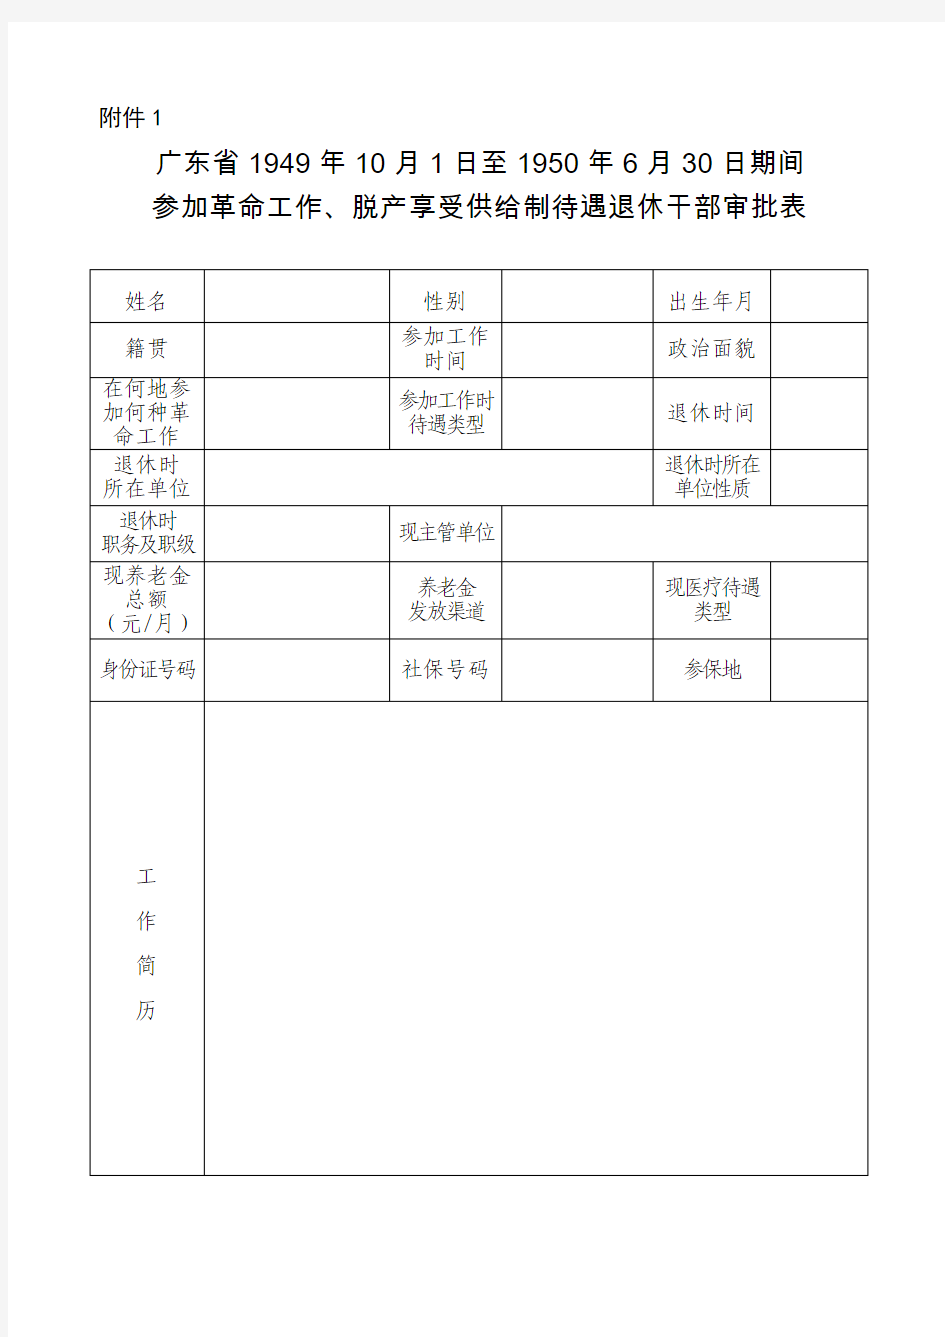 广东省1949年10月1日至1950年6月30日期间 参加革命工作、脱产享受供给制待遇退休干部审批表